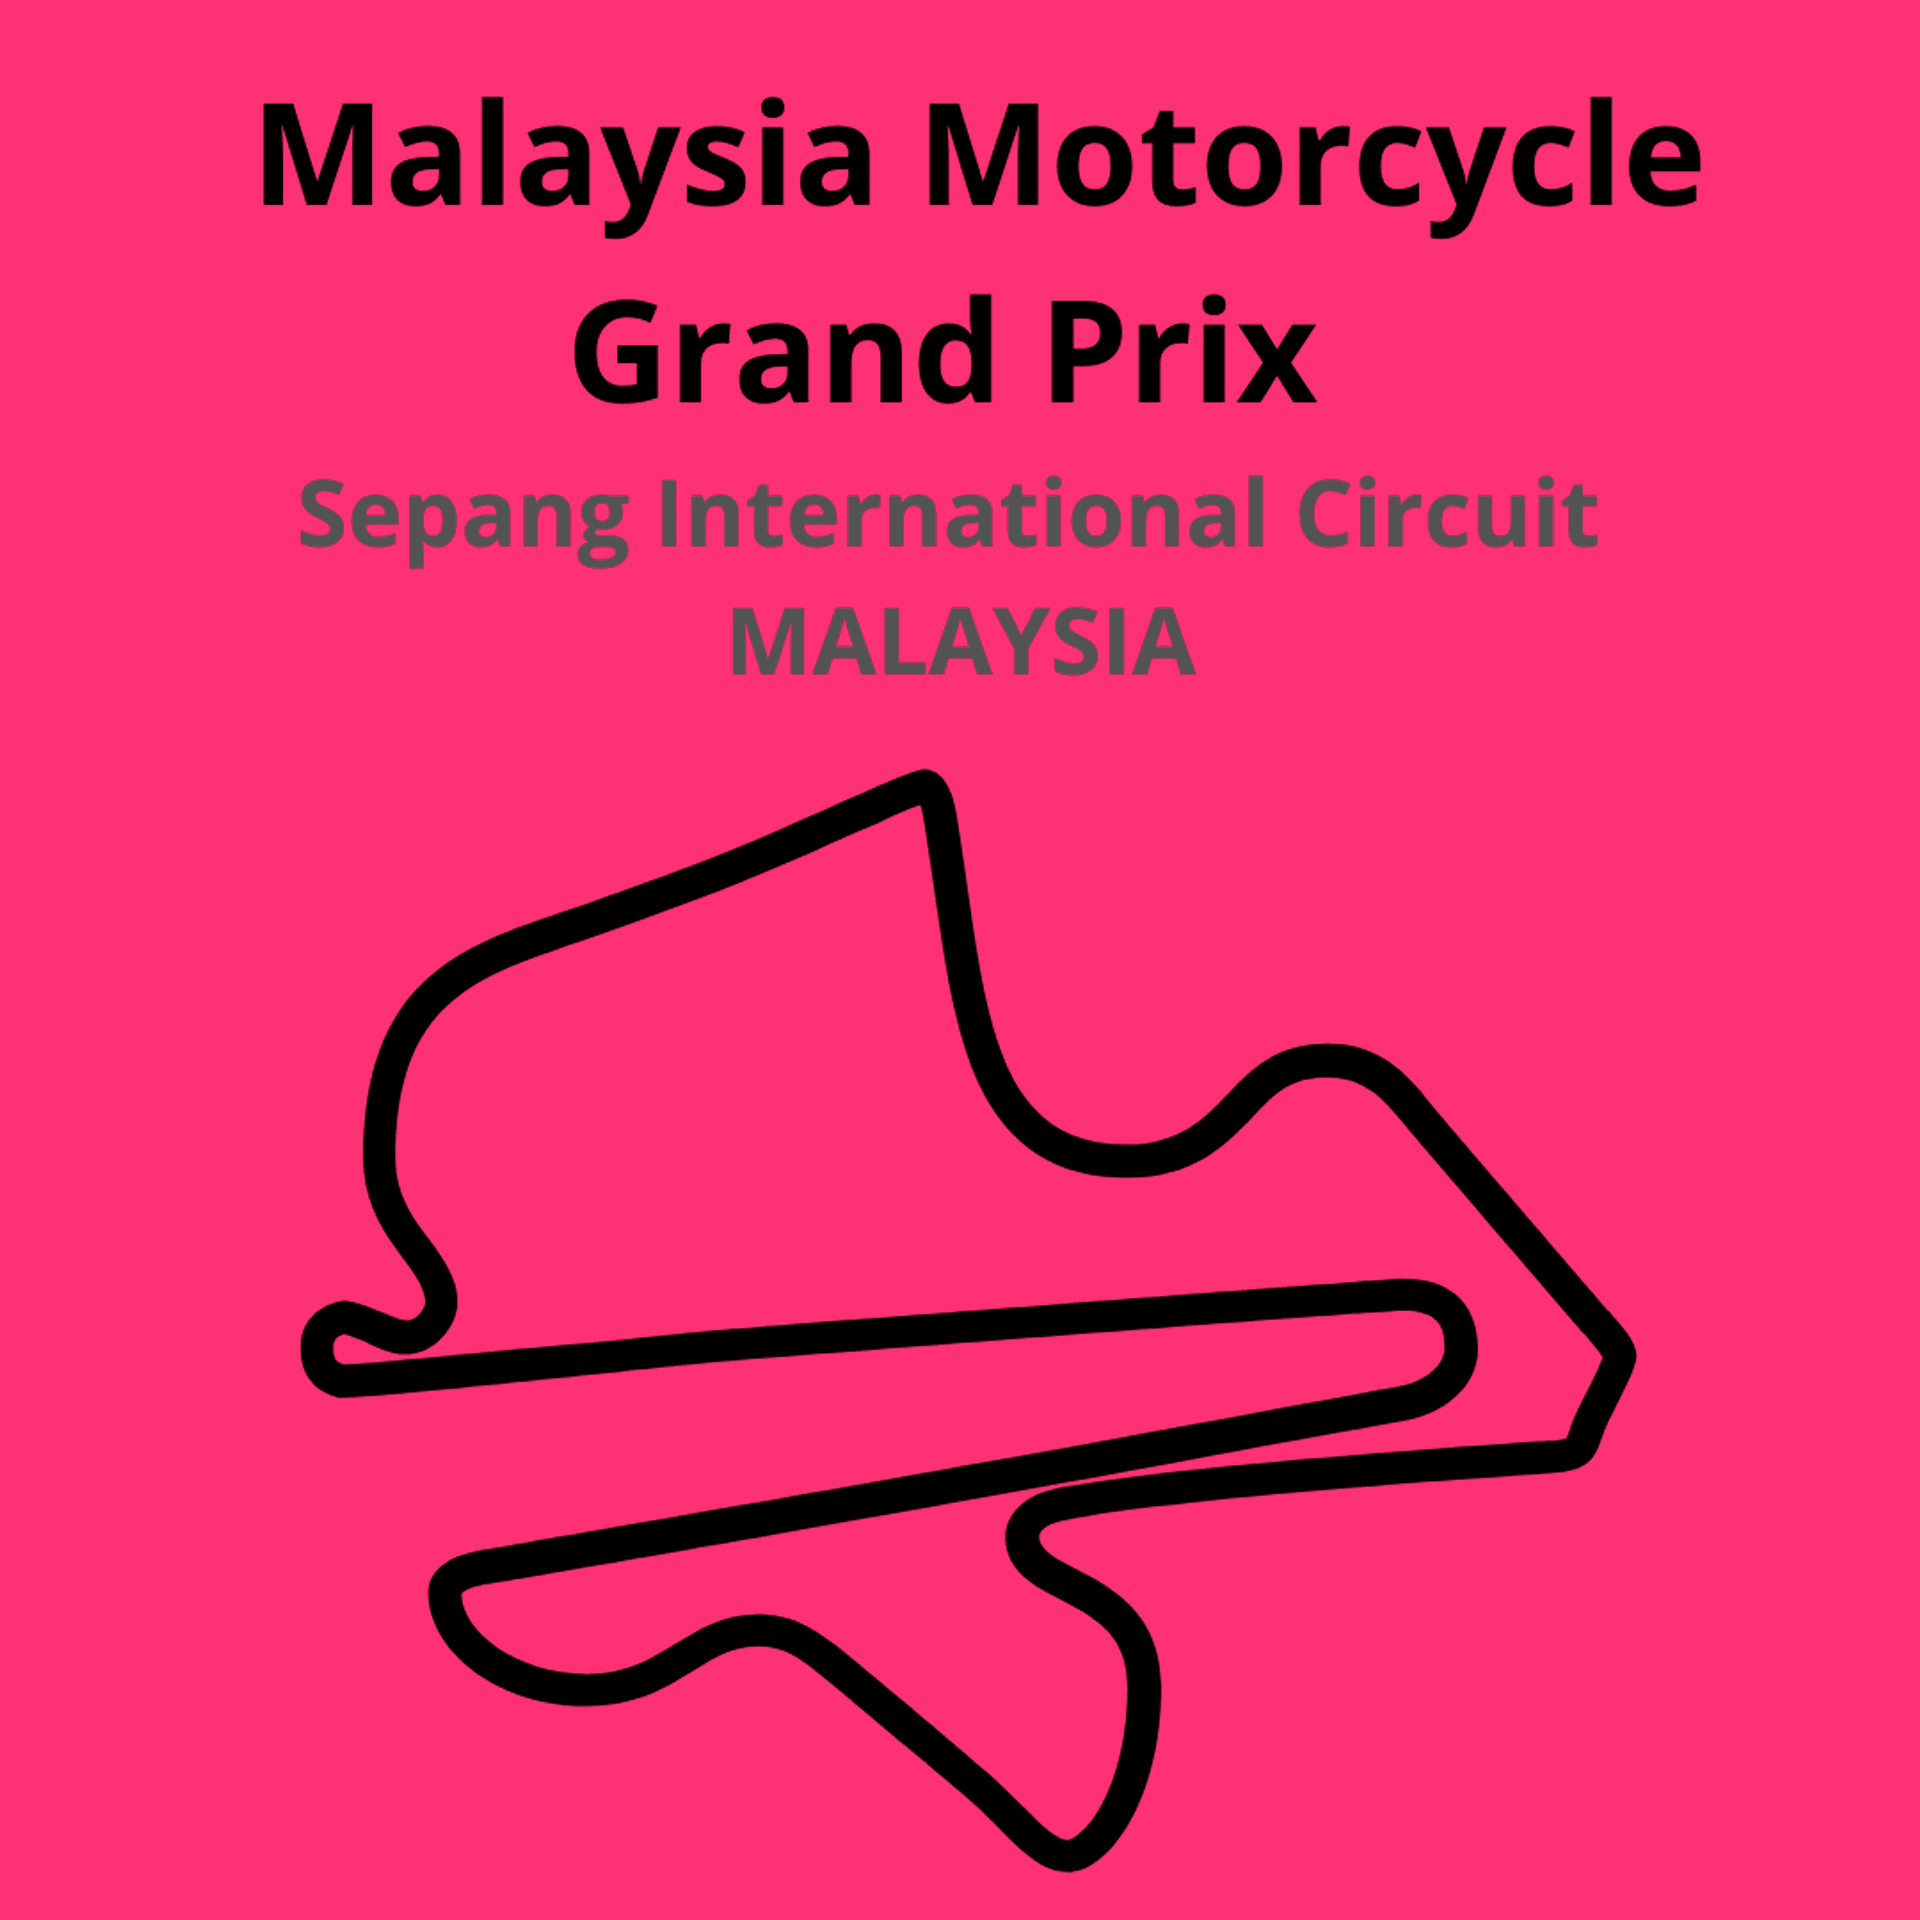 Malaysia Motorcycle Grand Prix. Scopri tutte le gare del moto mondiale 2021.Le caratteristiche di ogni circuito, i record e difficoltà.Segui insieme a noi tutte le gare di Tony Arbolino nella sua nuova avventura in Moto2